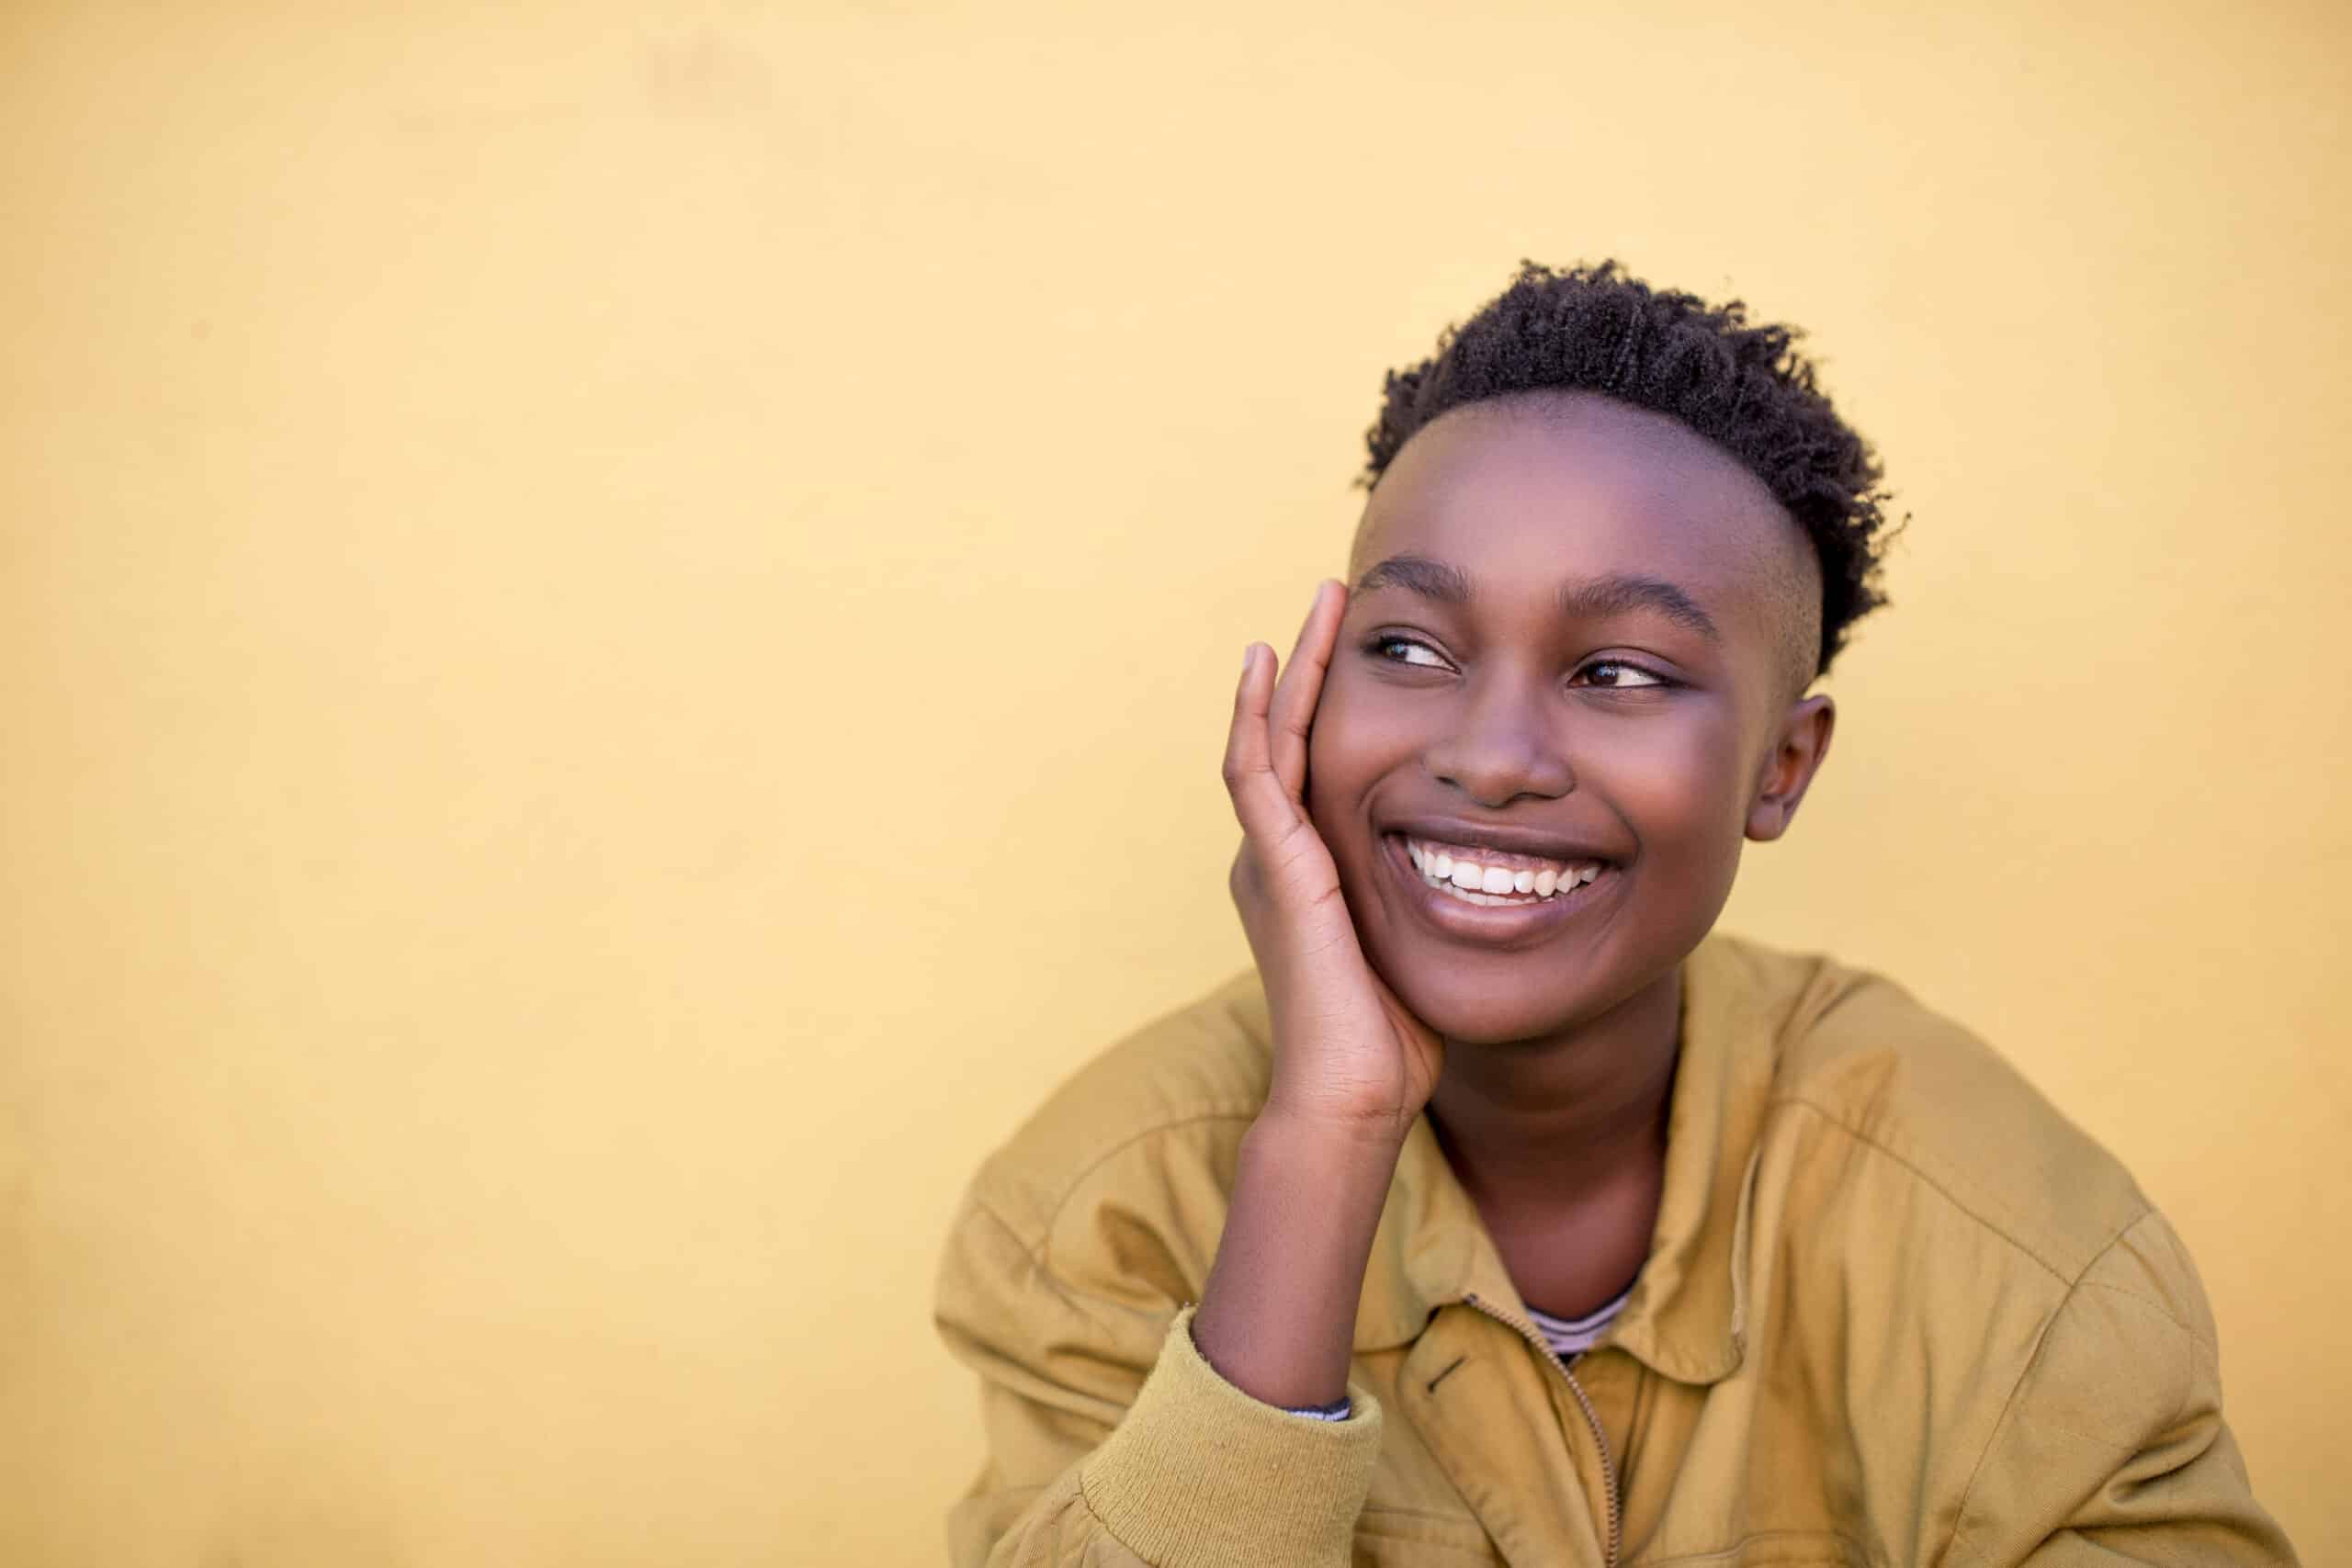 Junge schwarze Frau mit freudigem Gesichtsausdruck, die ihr Kinn auf die Hand stützt und vor einem gelben Hintergrund wegschaut. Sie trägt eine legere Jacke und hat kurzes, lockiges Haar. © Fotografie Tomas Rodriguez